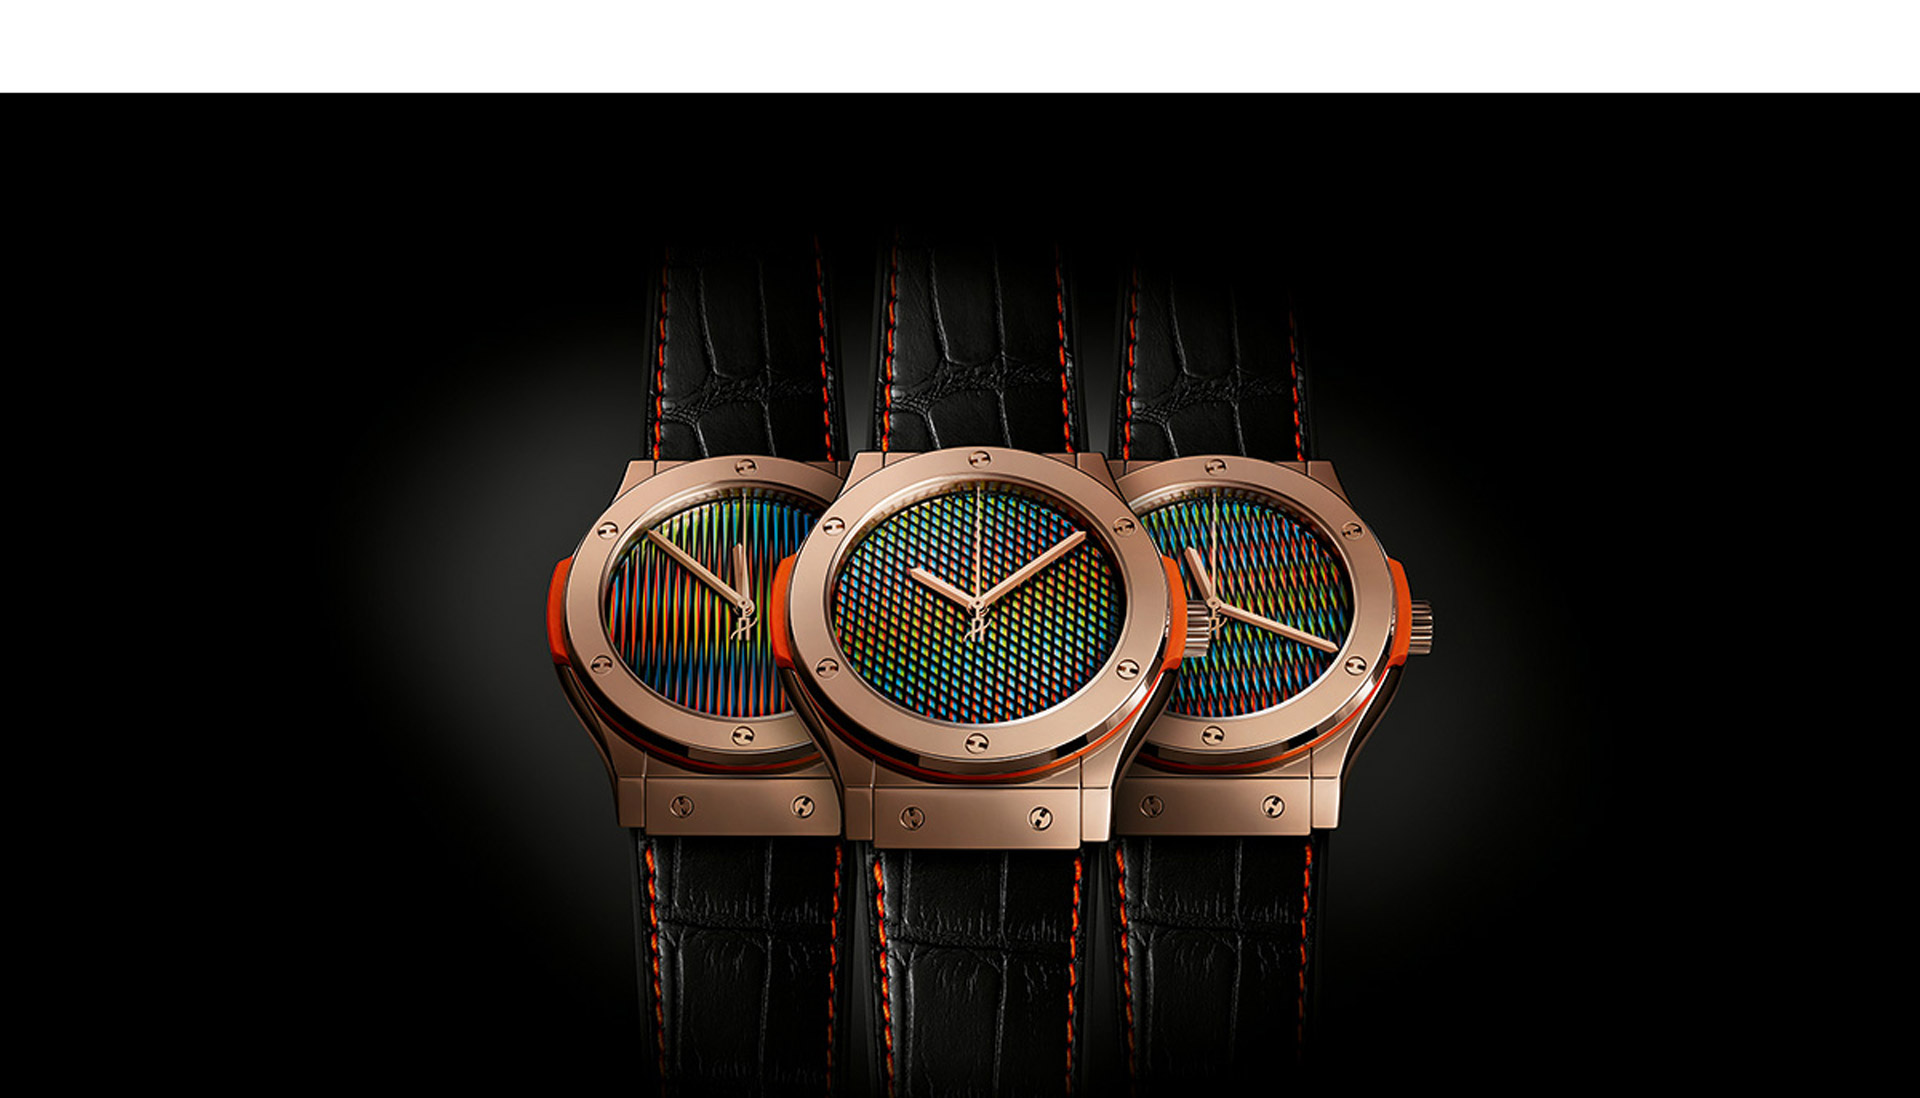 La empresa de relojes suiza lanzó al mercado, a través de un evento en Miami, tres relojes edición ilimitada basados en la quinestesia del artista